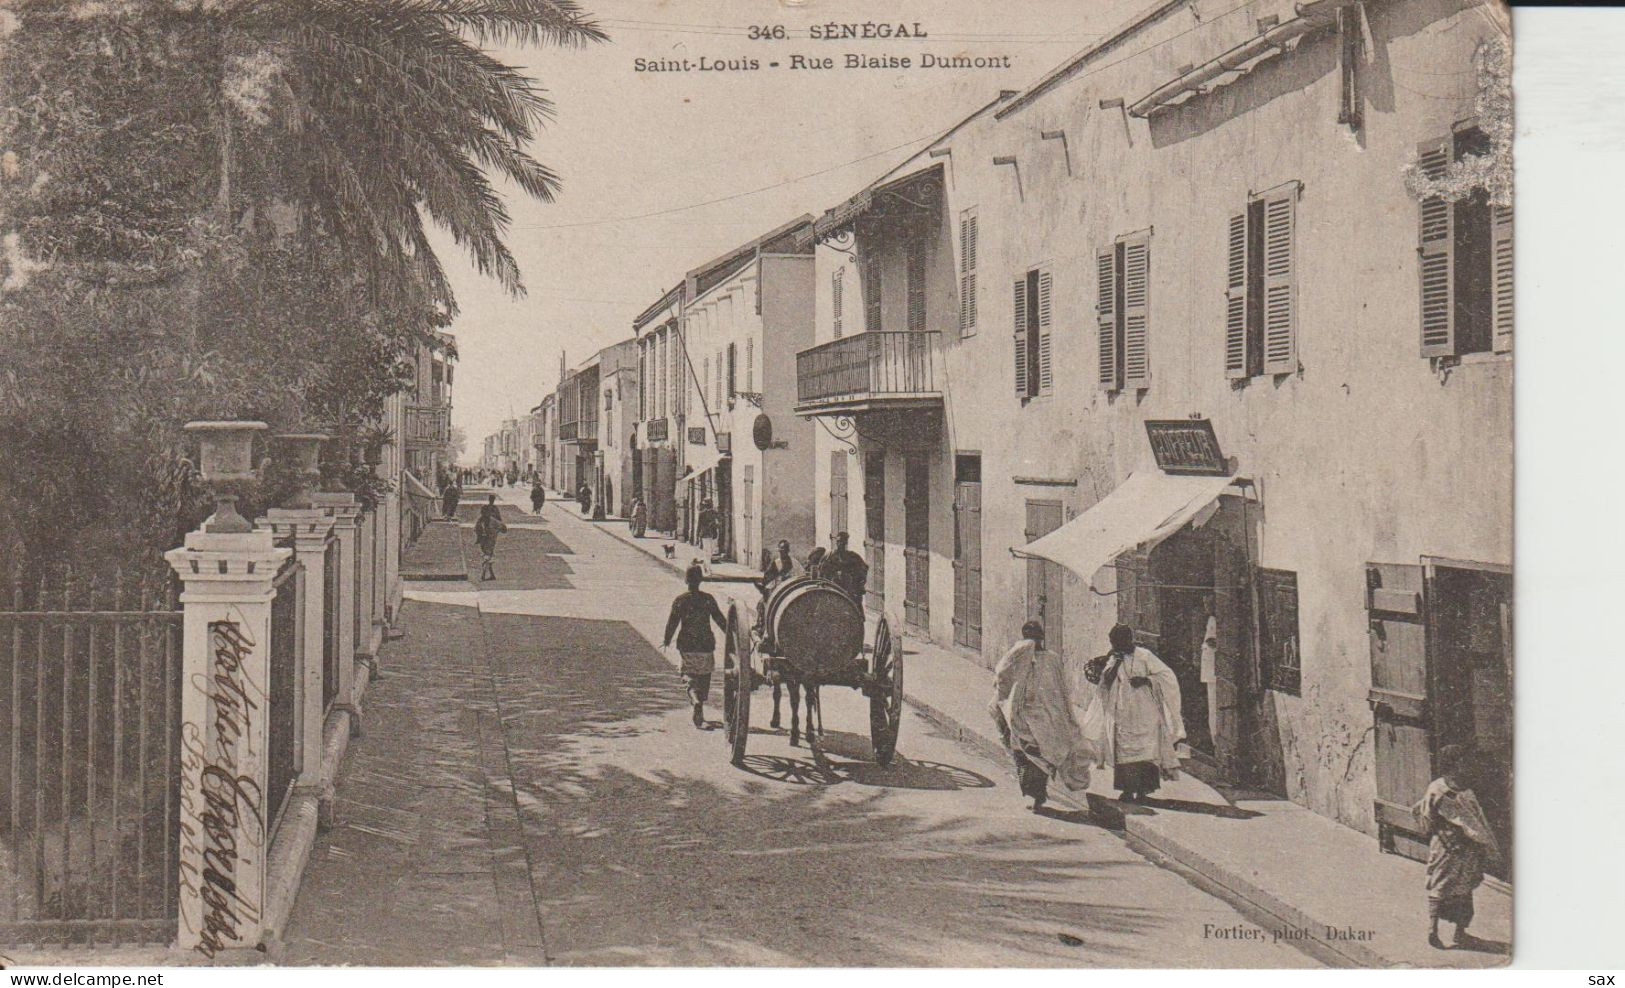 2420-217 Av 1905 N°346 Séné St Louis Rue Blaise Dumont Fortier Photo Dakar   Retrait 01-06 - Senegal